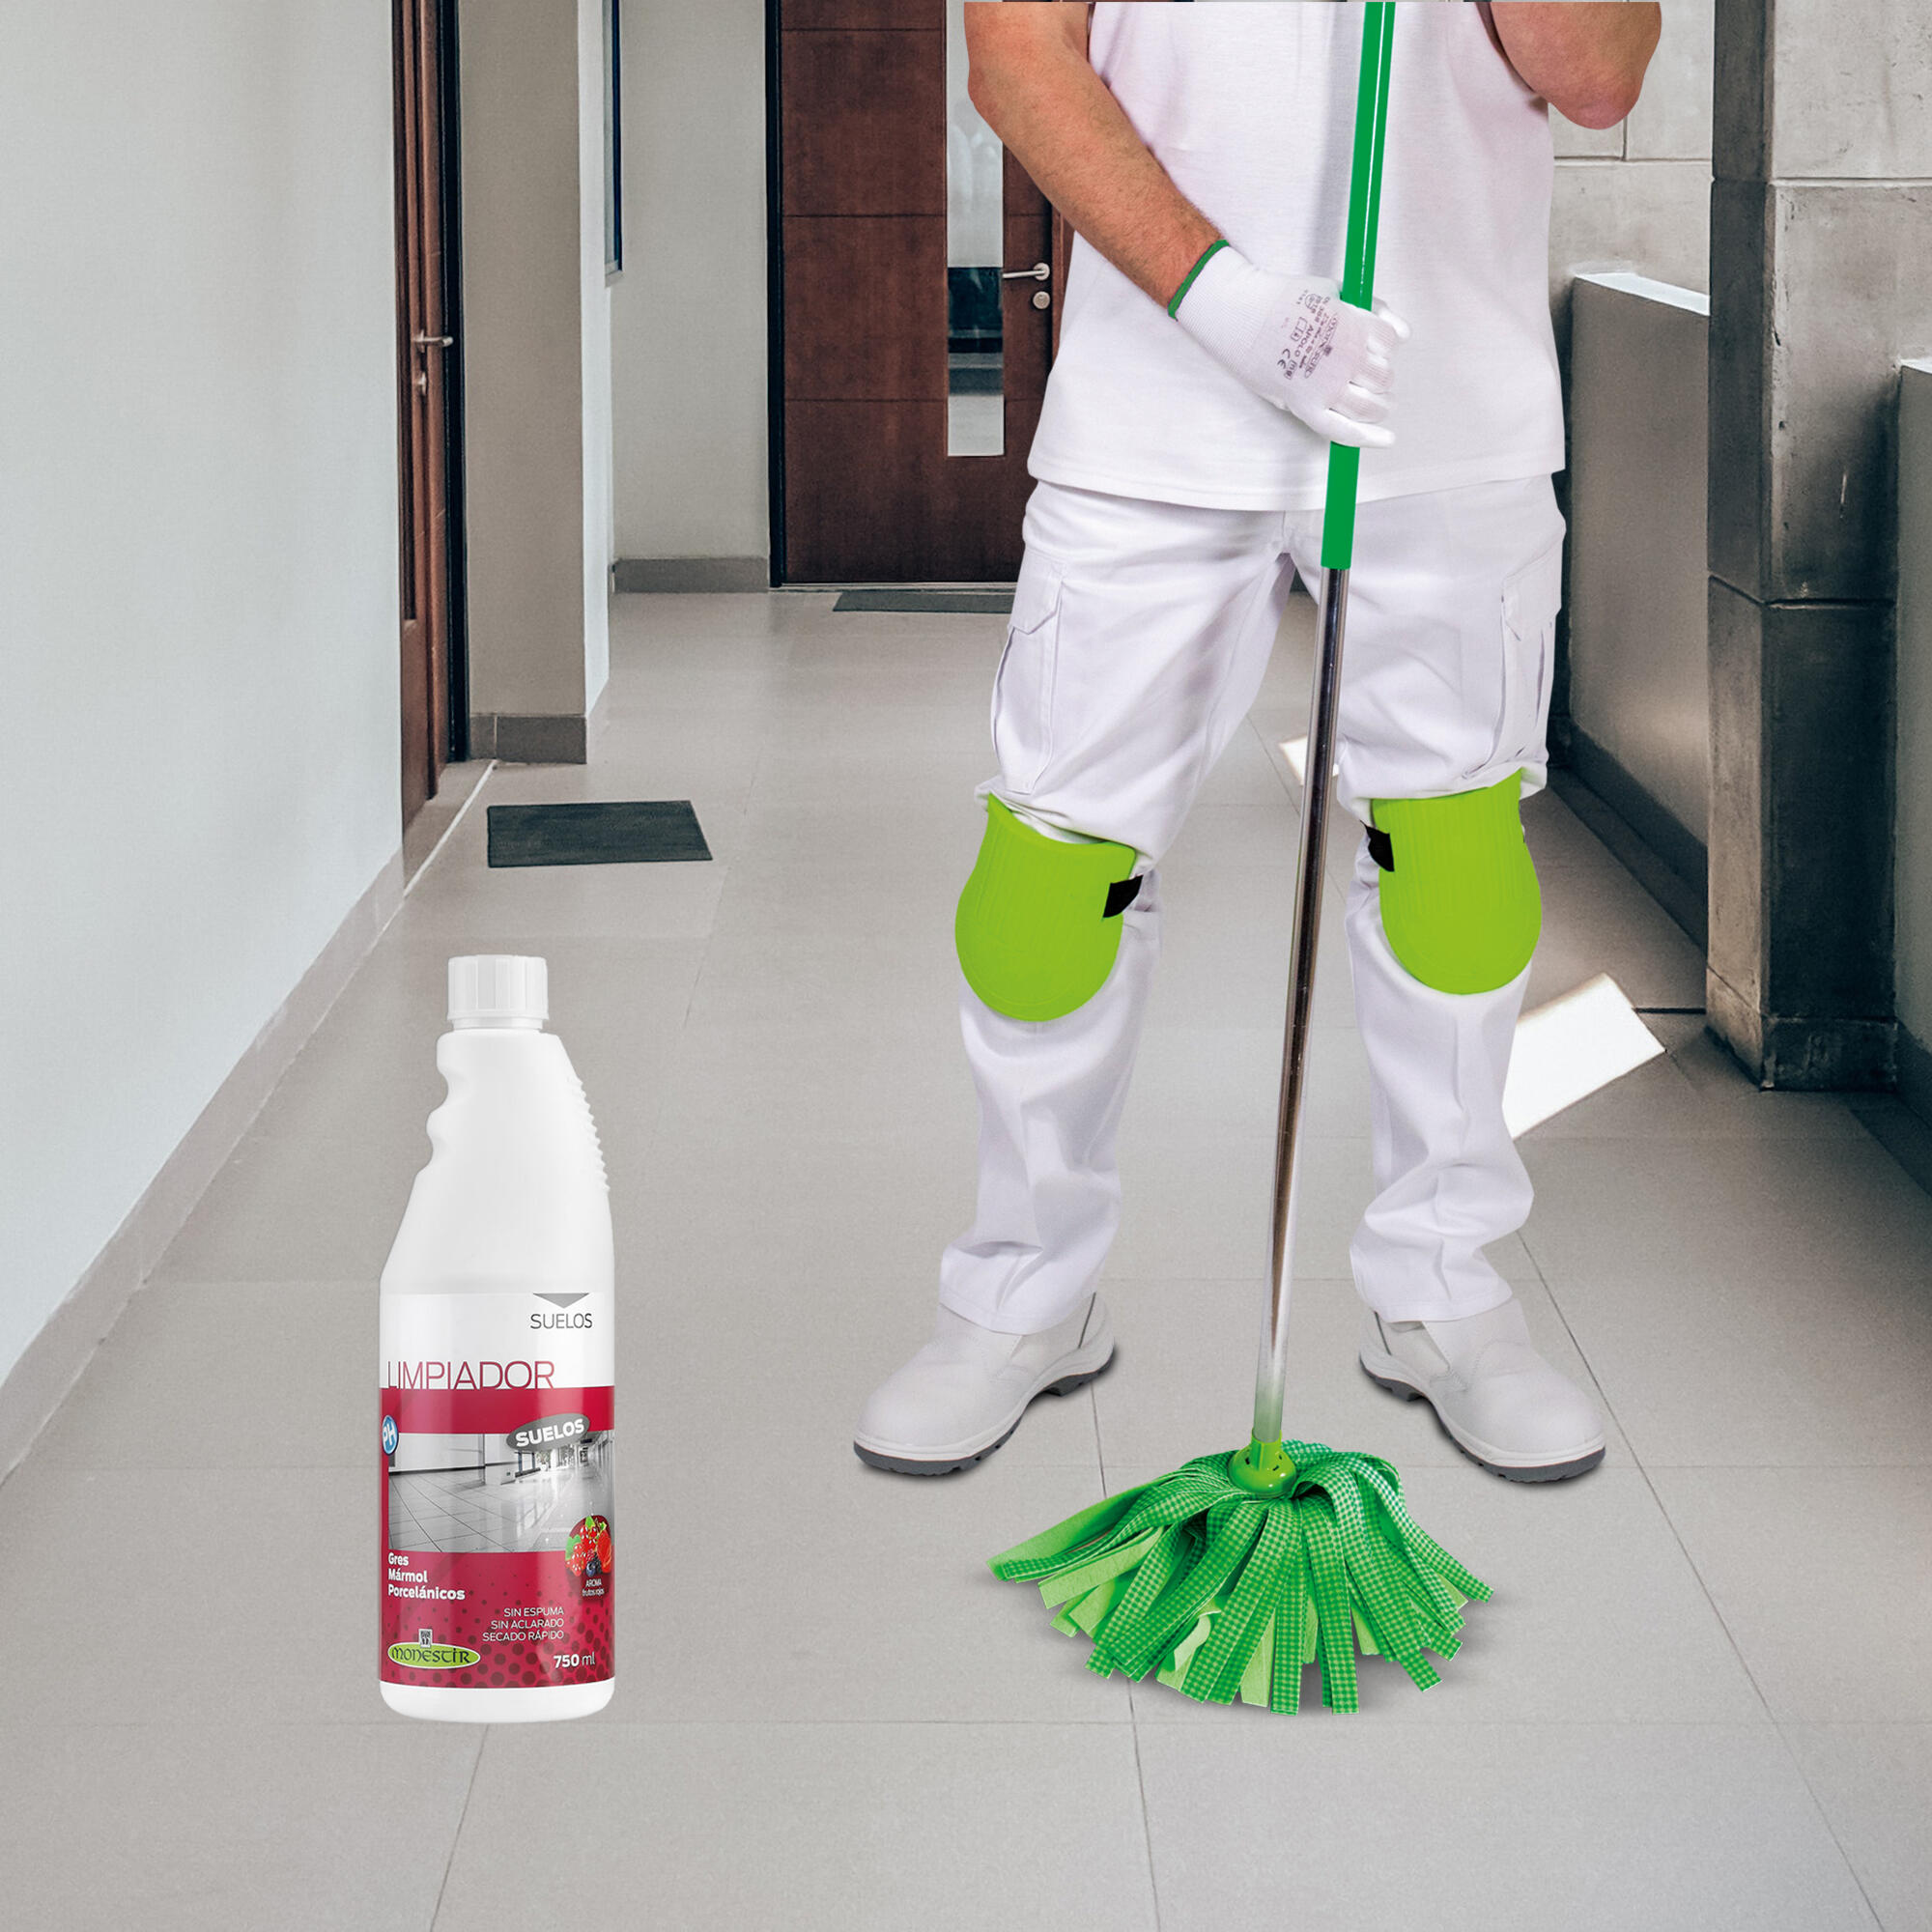 Limpiador abrillantador  Starwax,limpieza de la casa